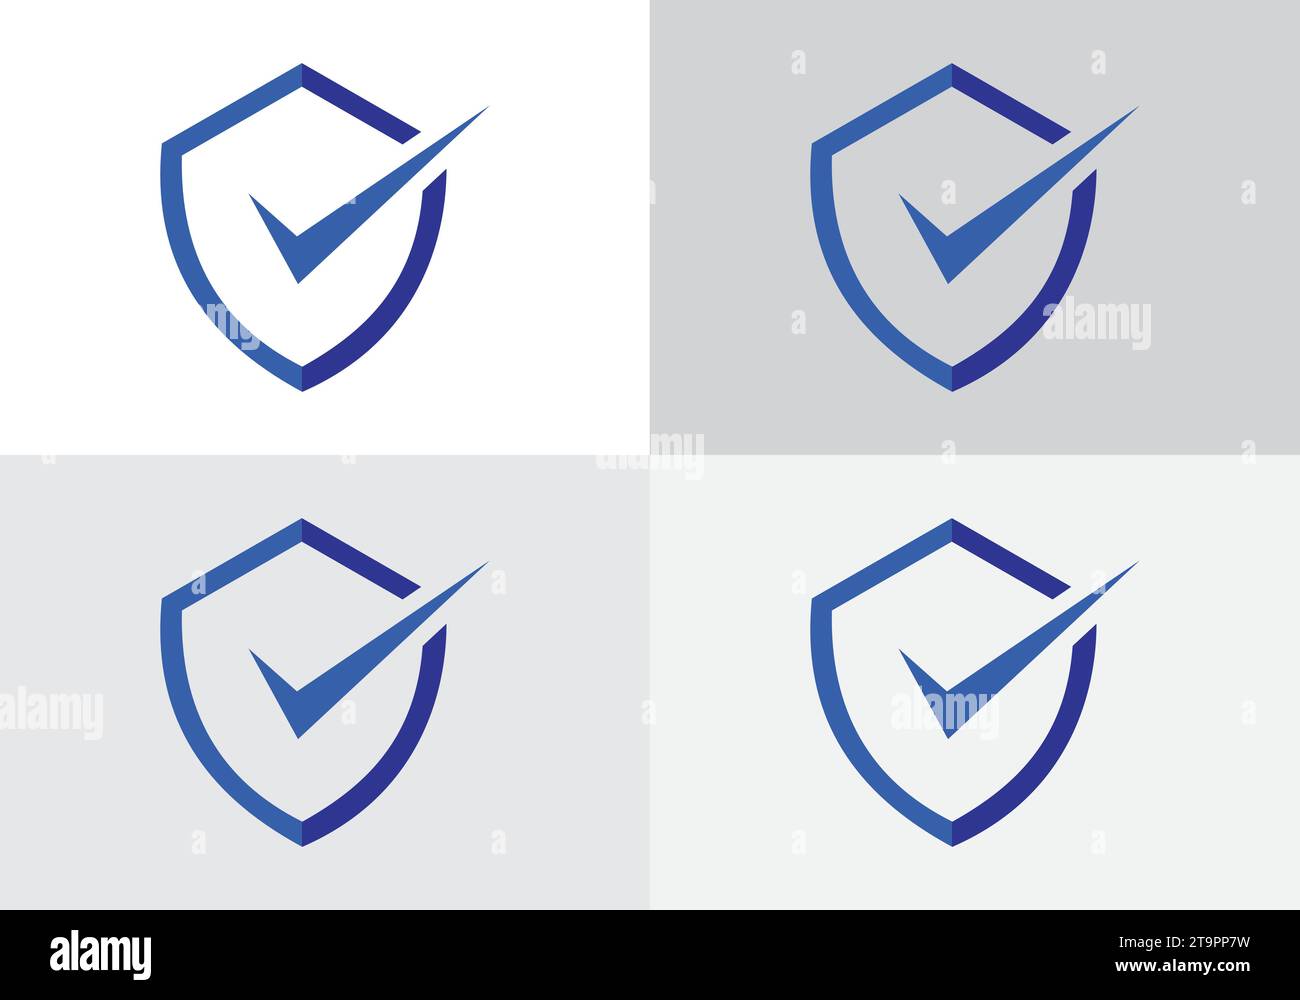 Vektorvorlage für Shield Check Mark Symbol Logo. Sicherheit, Schutz, Datenschutzkonzept. Stock Vektor